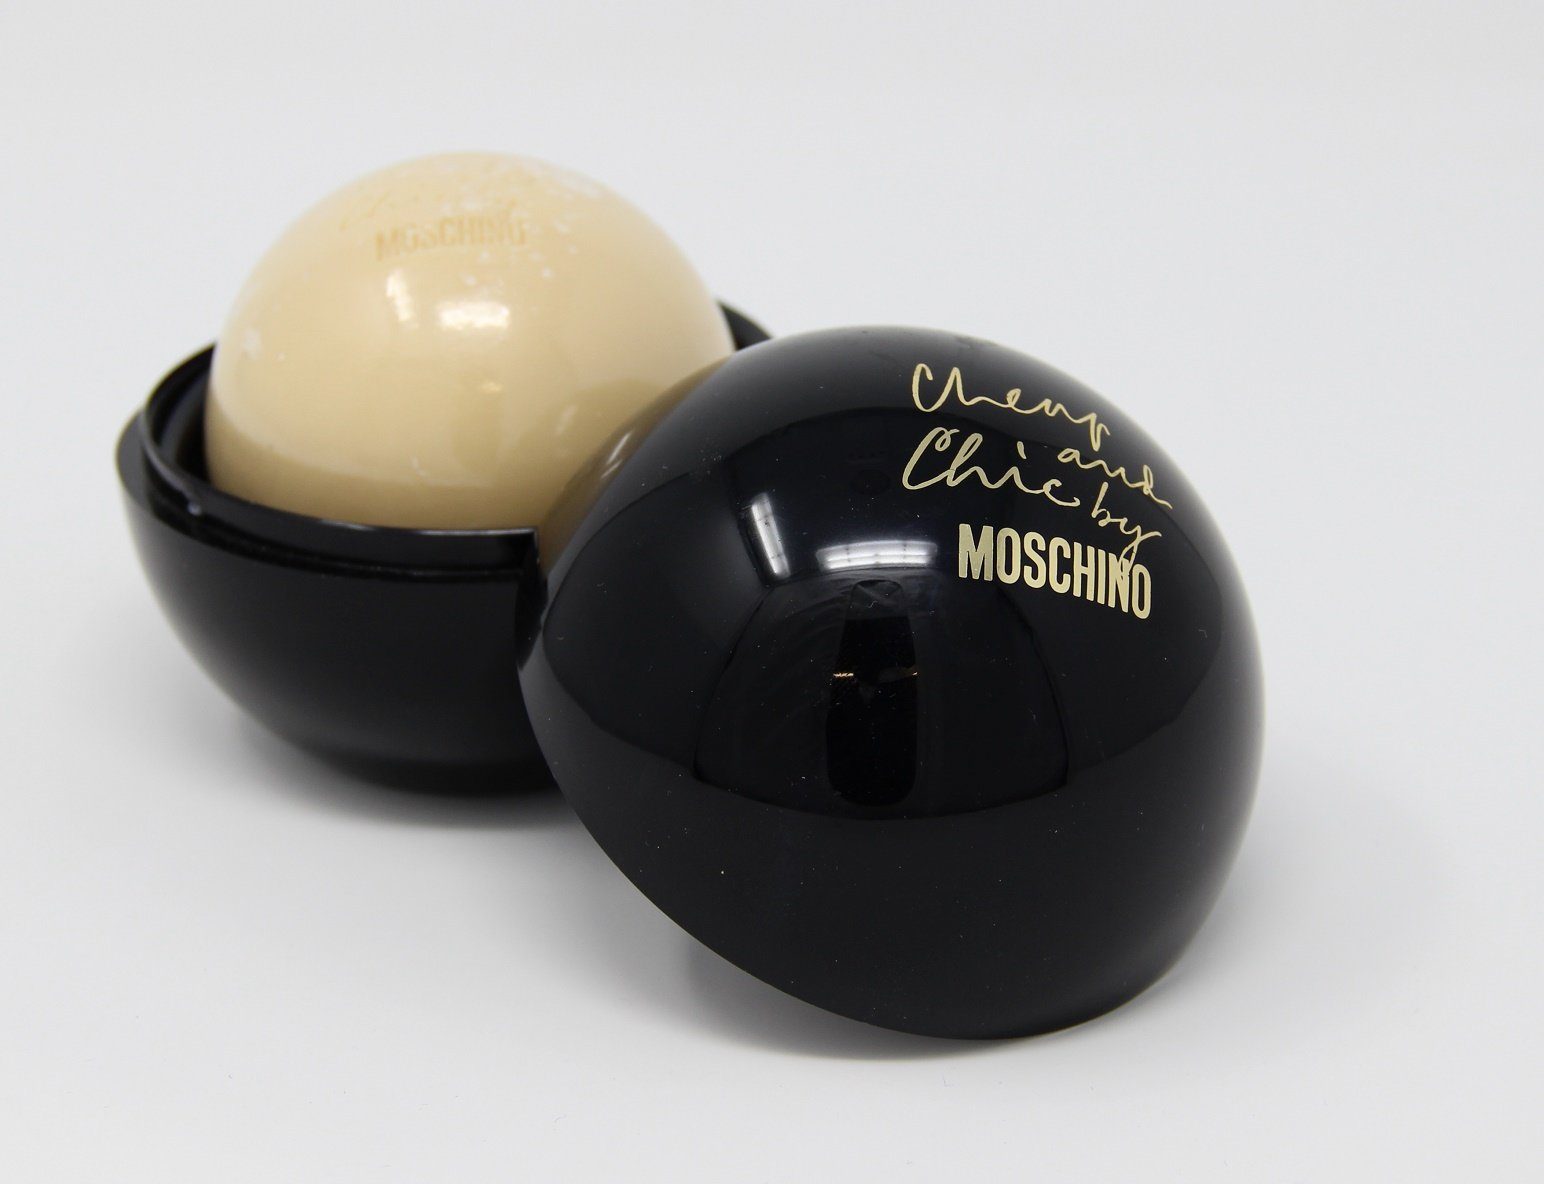 Cheap Seife Handseife 100g Moschino and Chic Moschino Perfumed